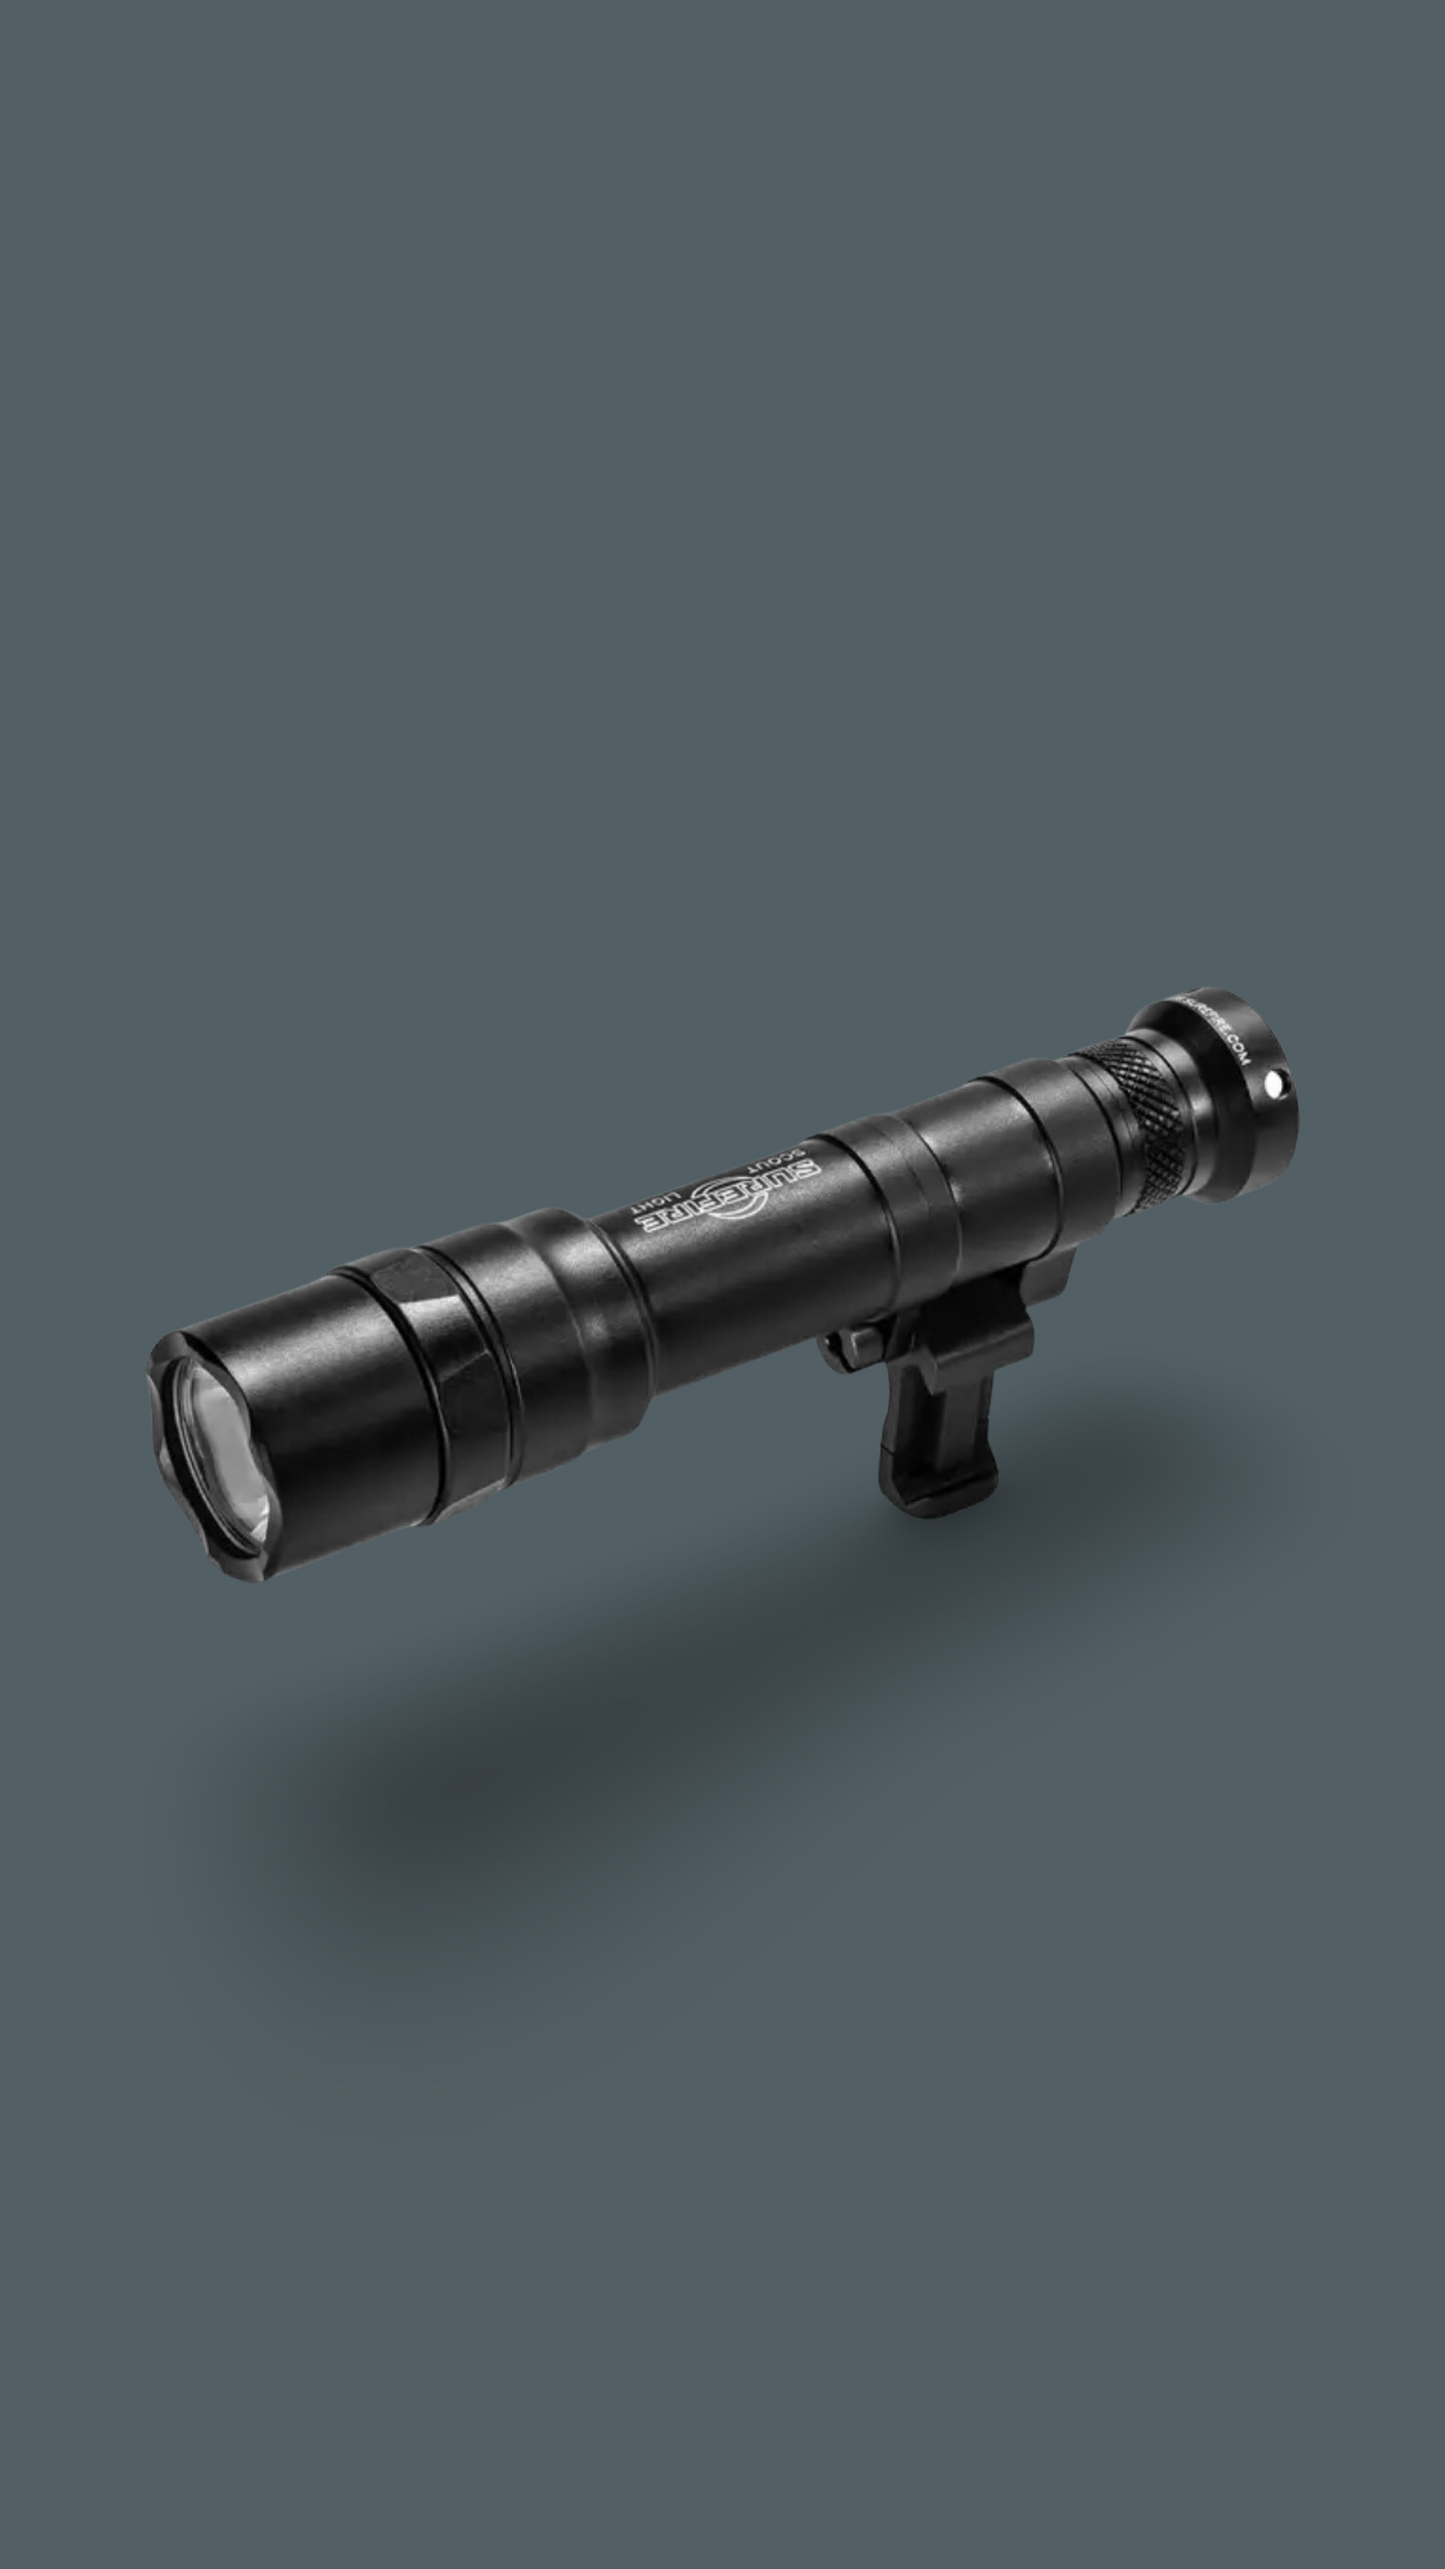 SureFire M640DF Scout Light Pro Dual Fuel Weapon Light - 1500 Lumens